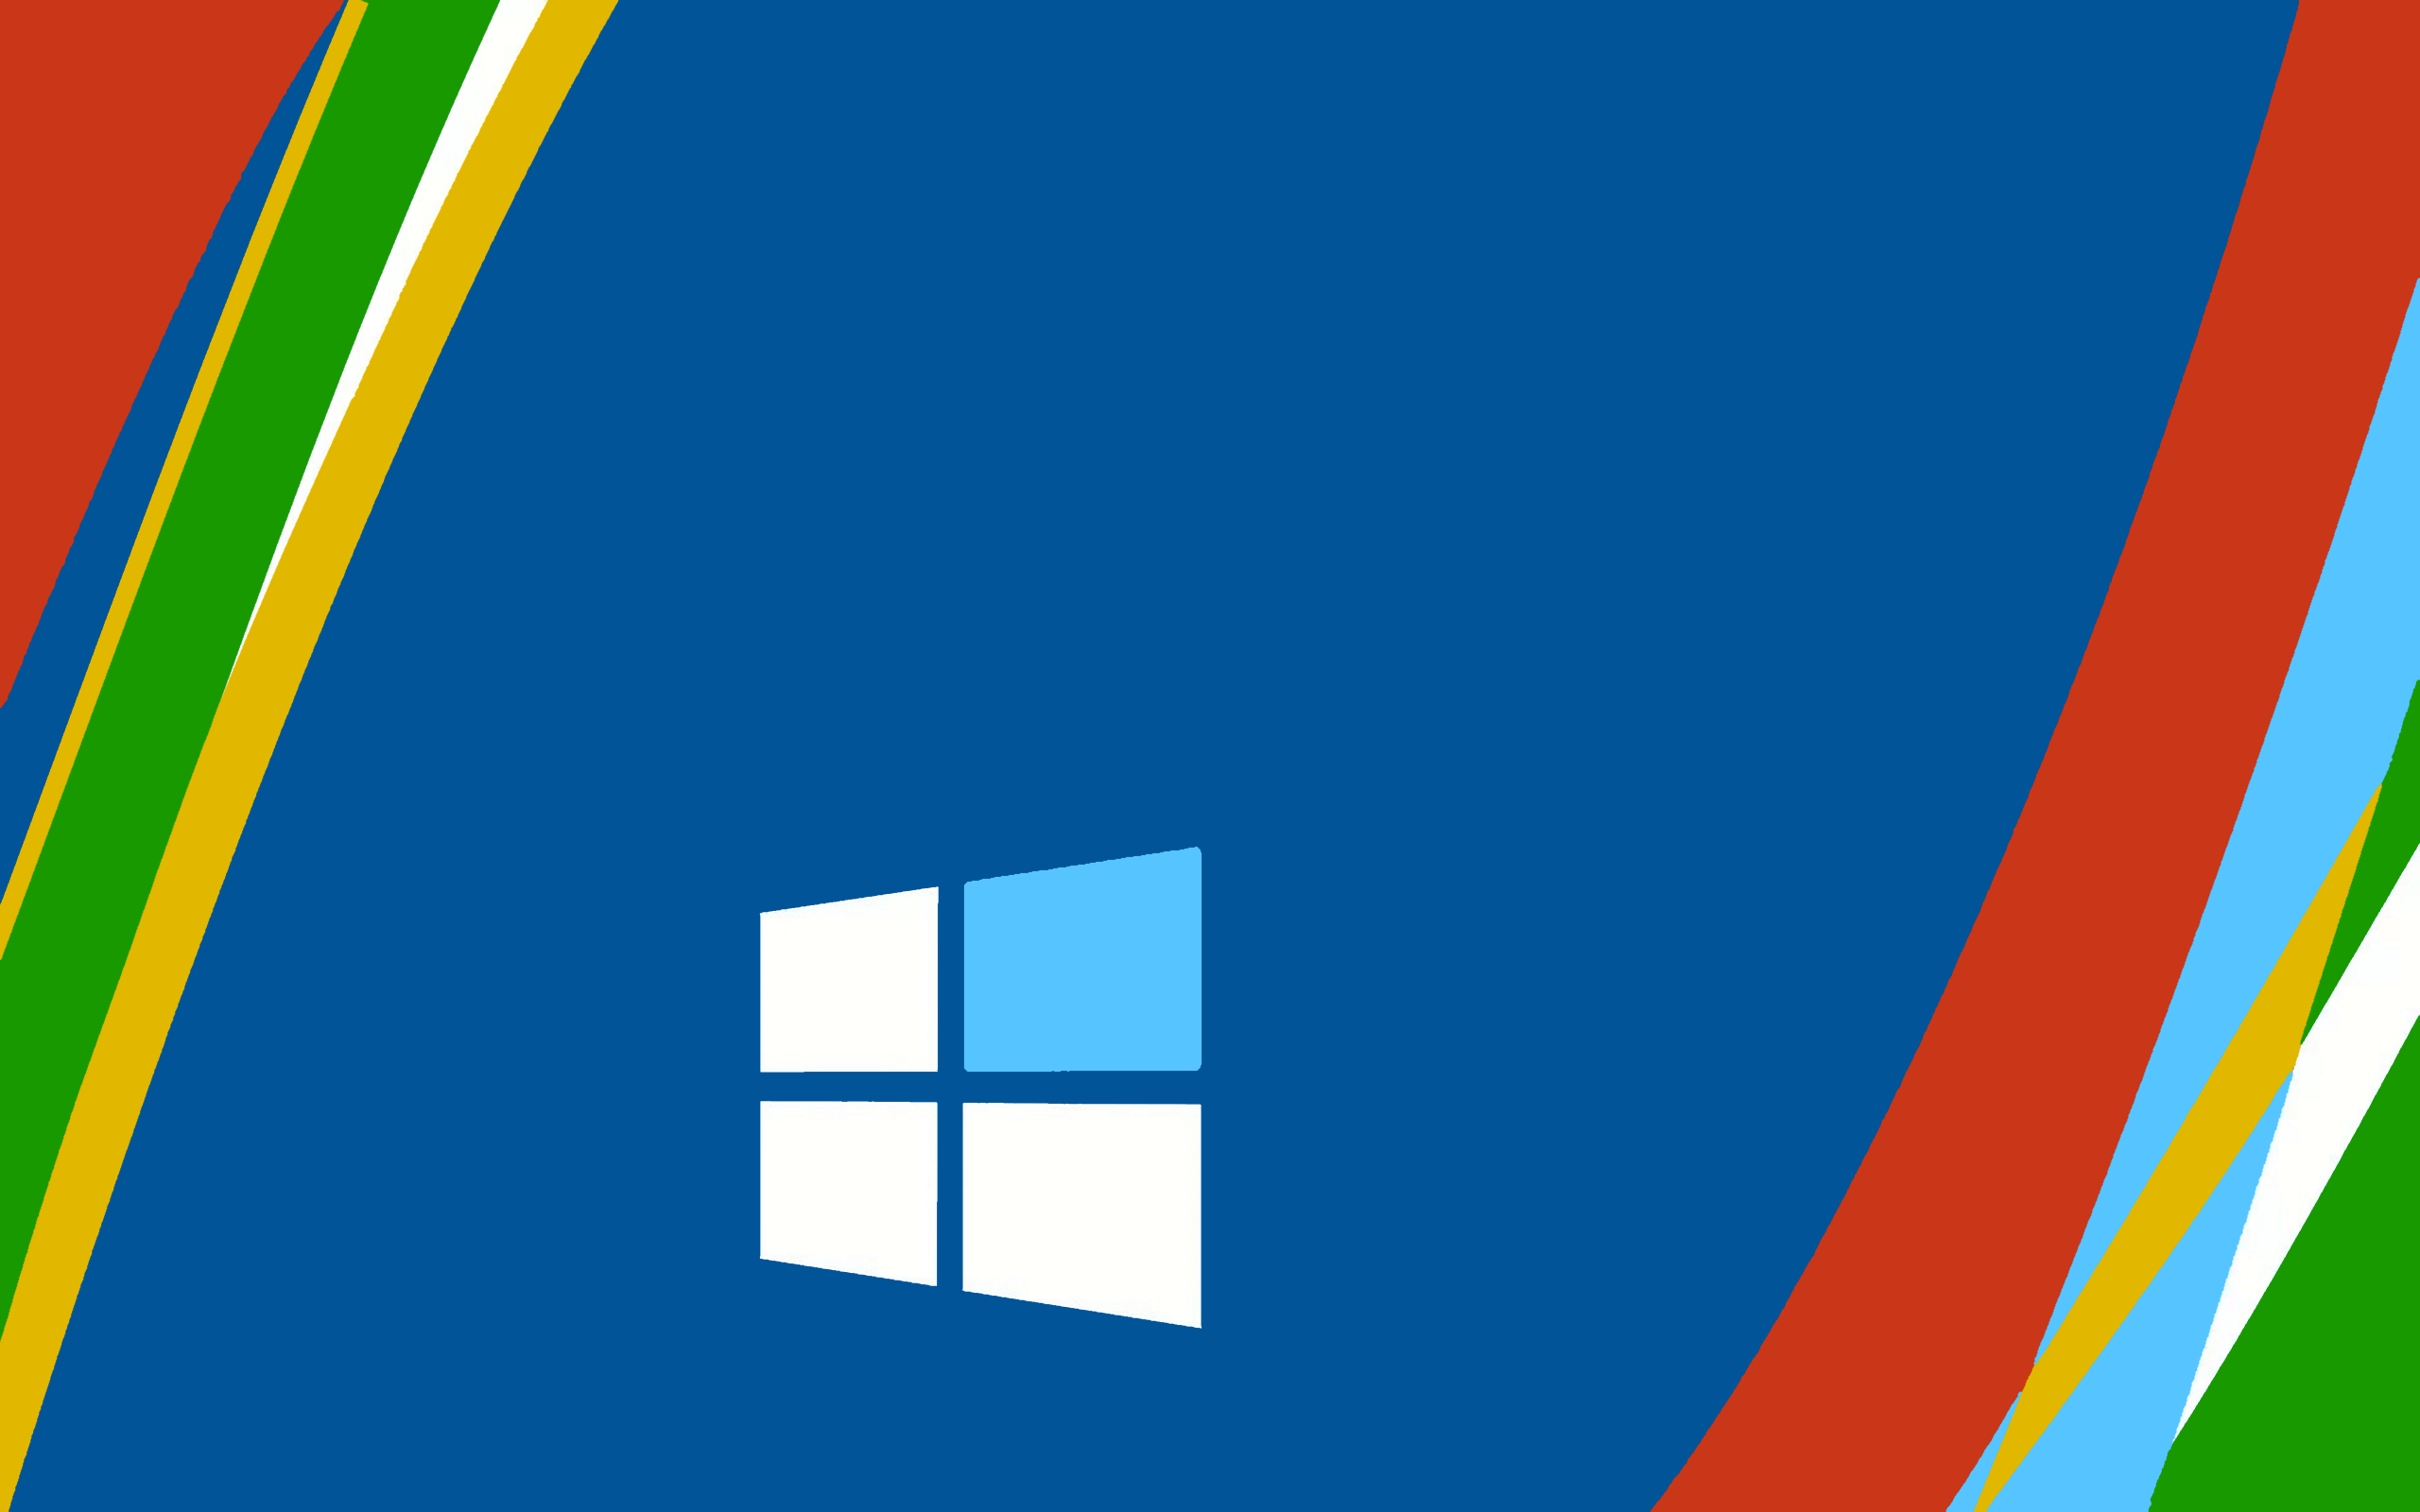 Windows 10 Pro Wallpaper Hd 19x1080